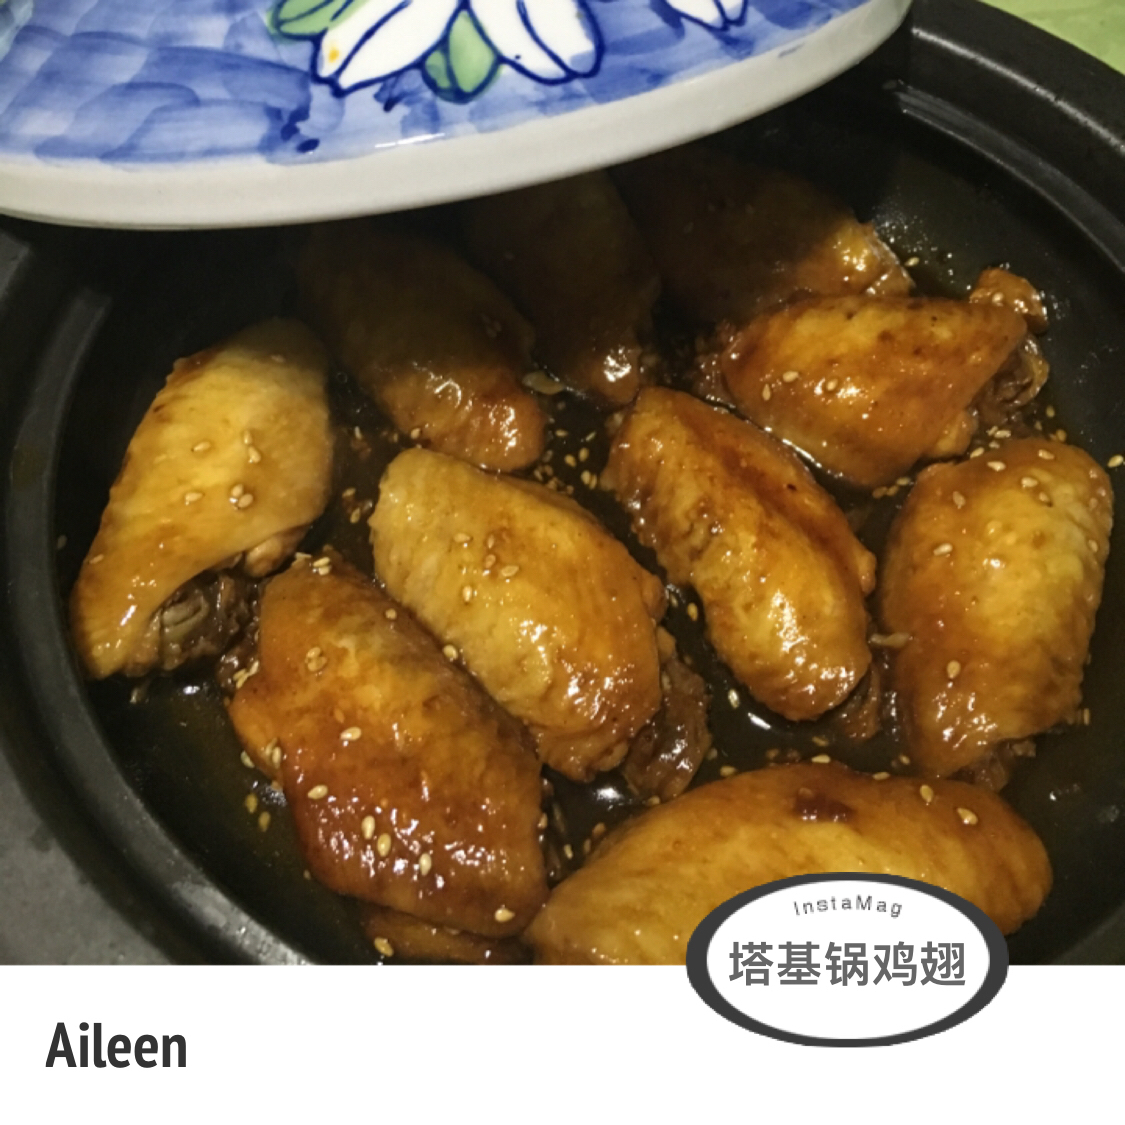 香薯鸡翅锅(塔吉锅)